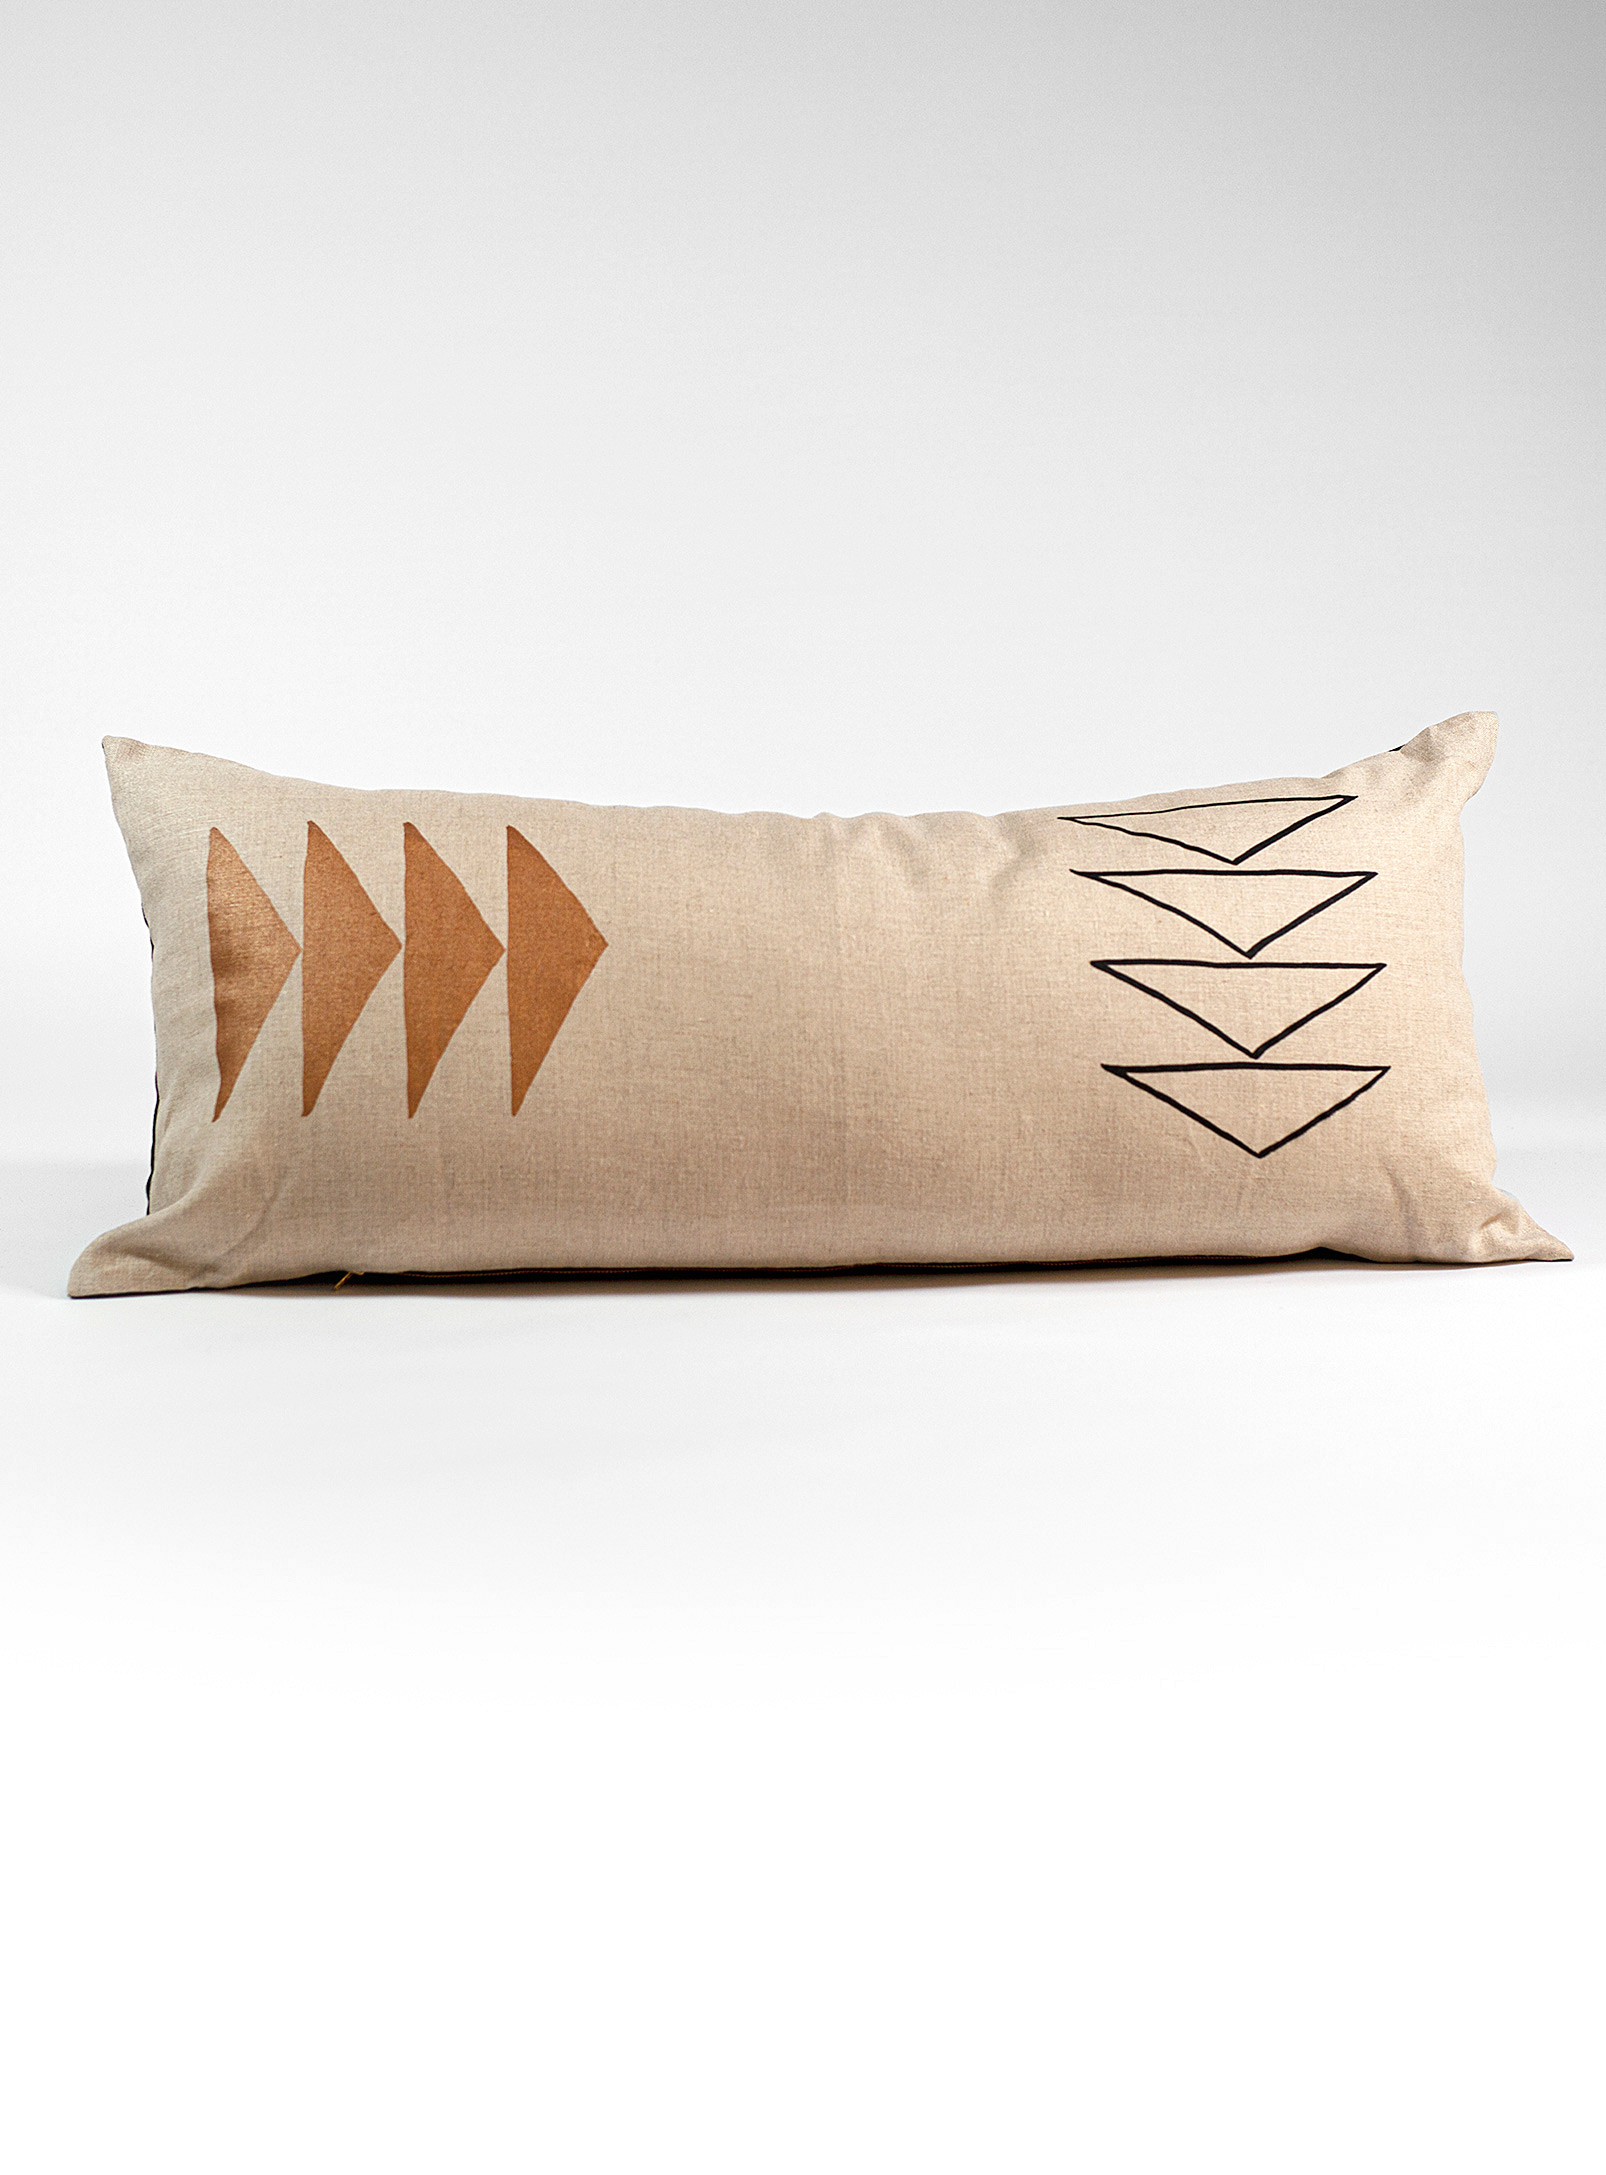 Indigo Arrows - Ishkoday lumbar cushion 38 x 89 cm